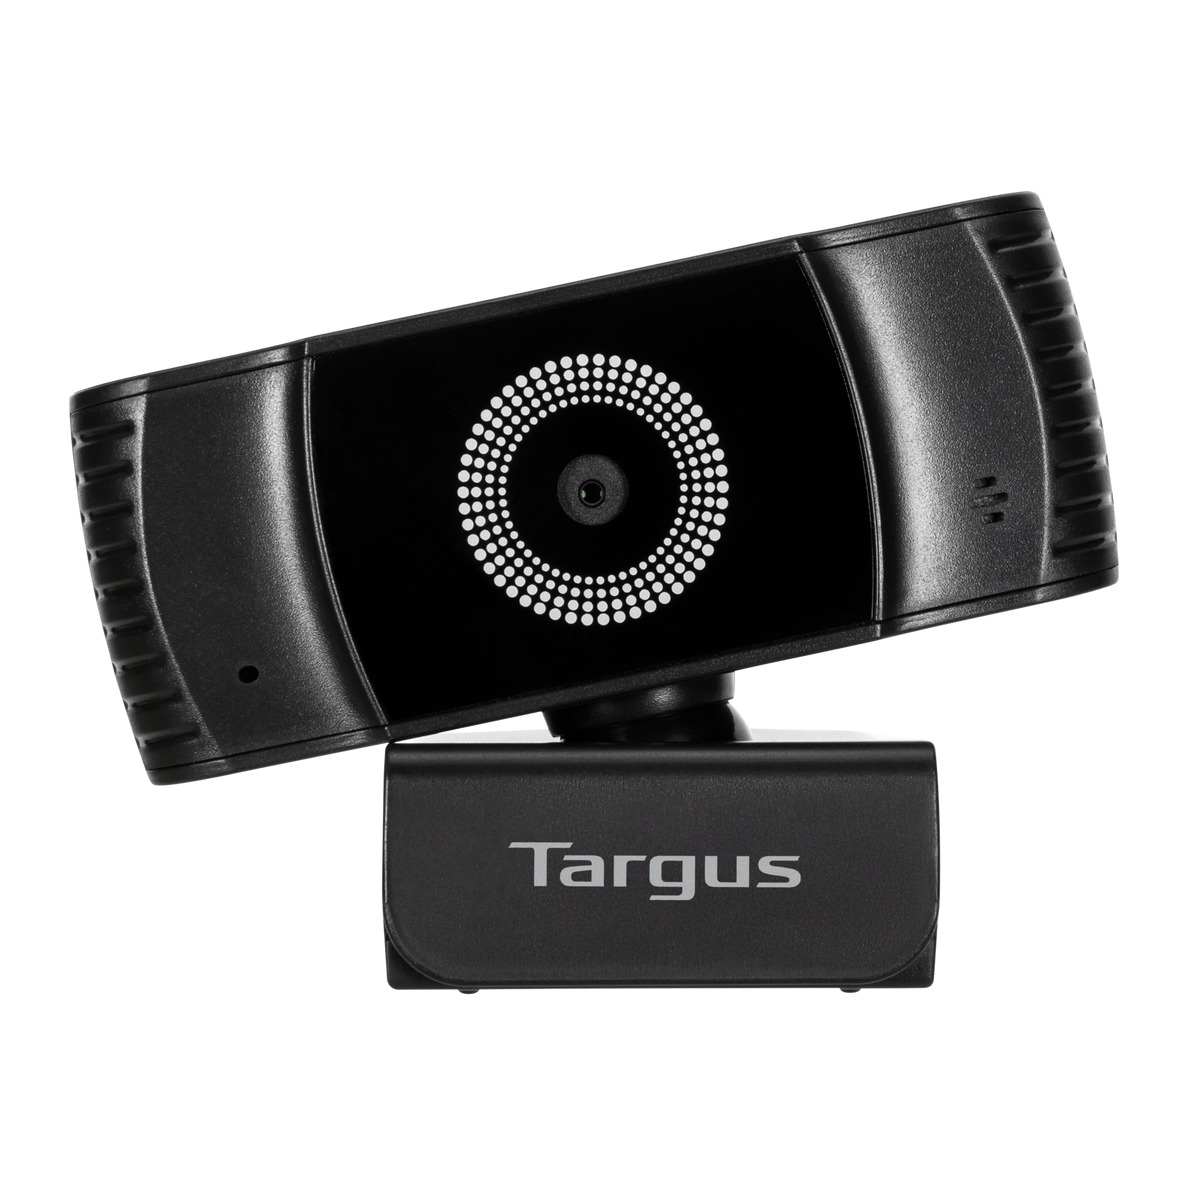  - Webcam1080P Full HD auto focus Targus Negro 4